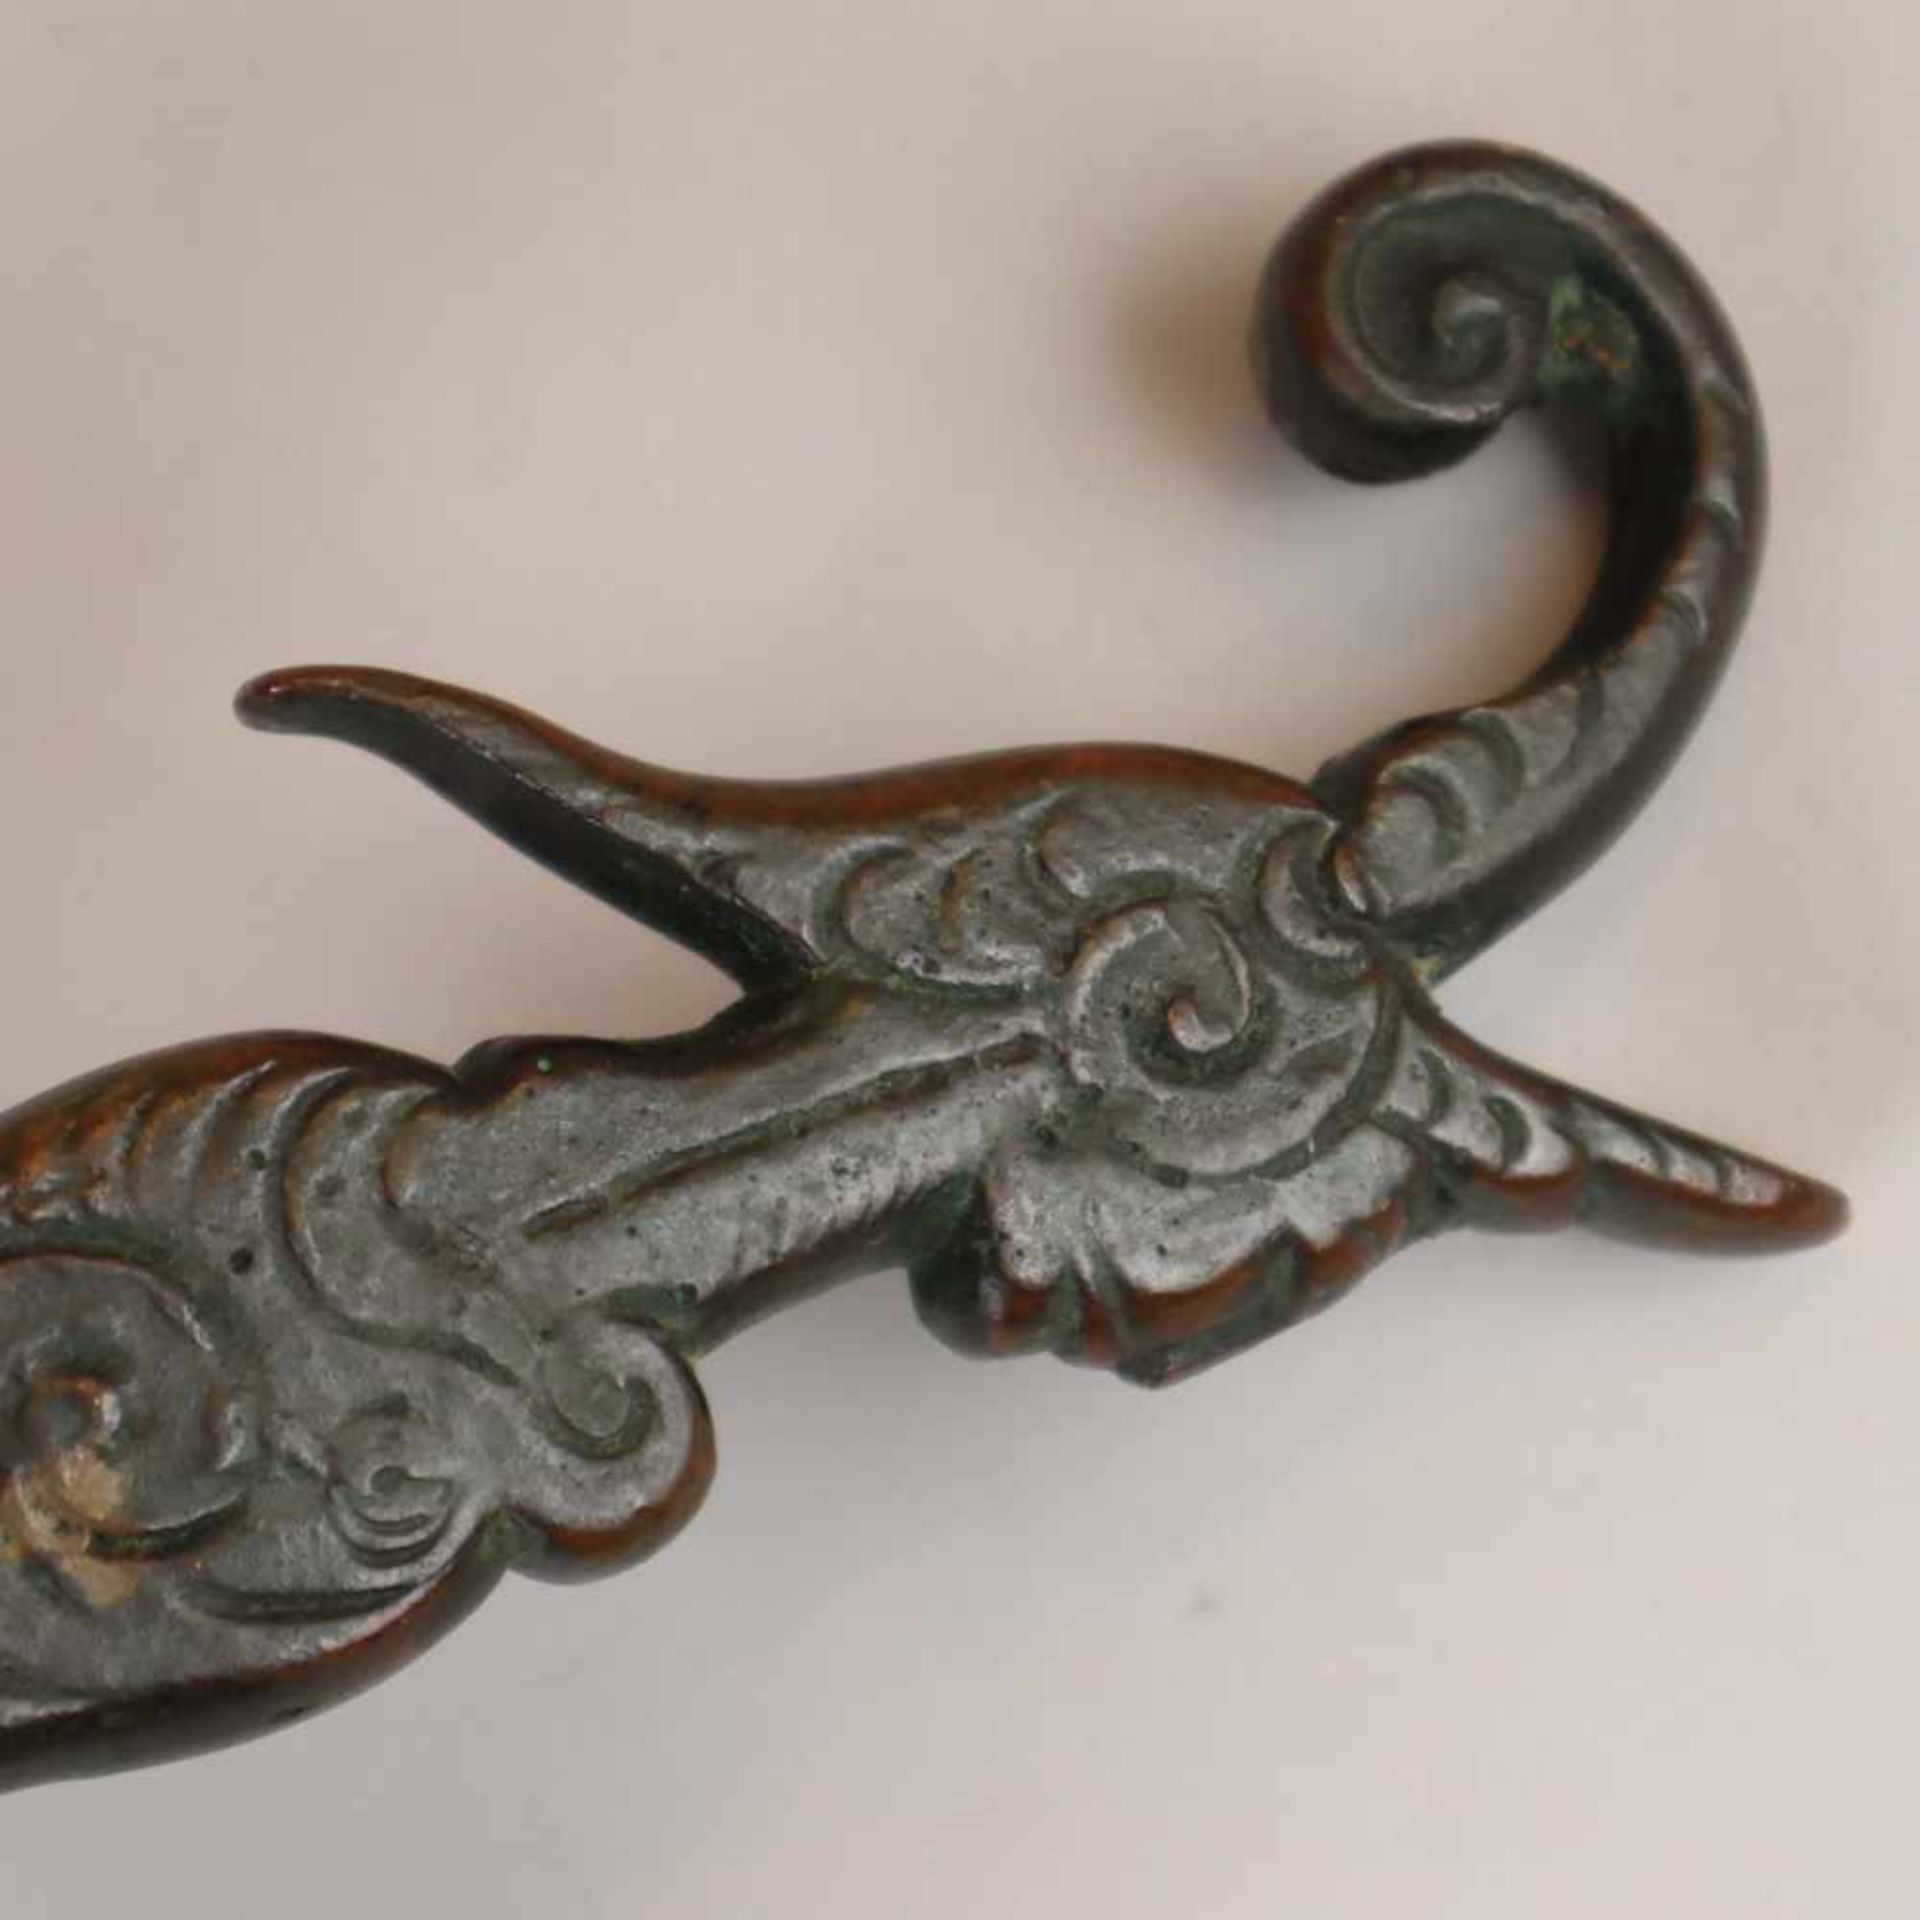 Türklopfer - Bronze, gegossen, dunkel patiniert, Dekor mit antropomorpher Figur und Voluten, - Bild 3 aus 6